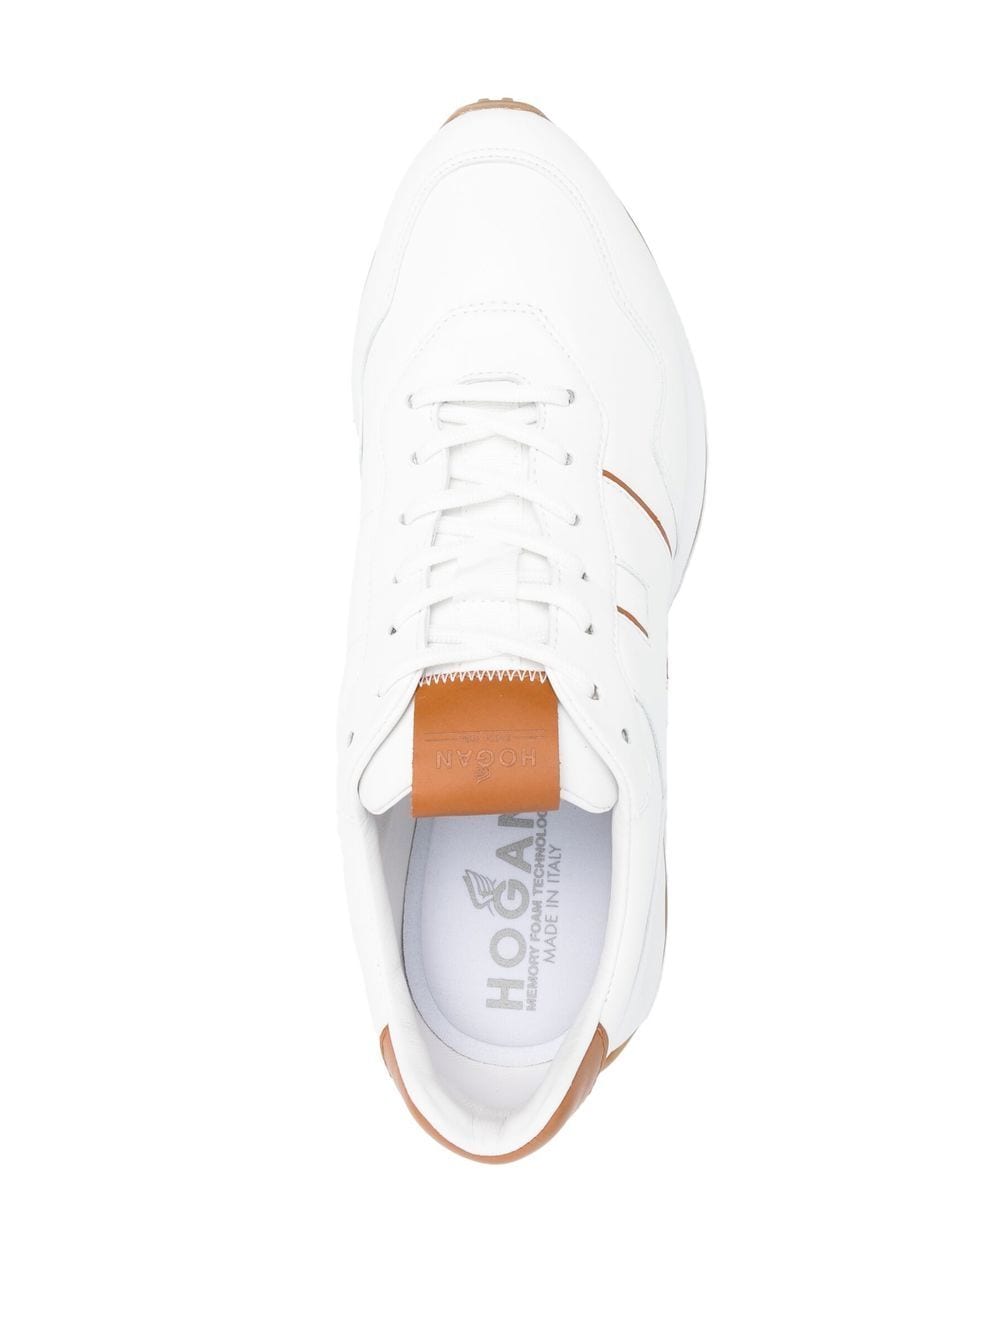 Hogan Pre Sneakers White